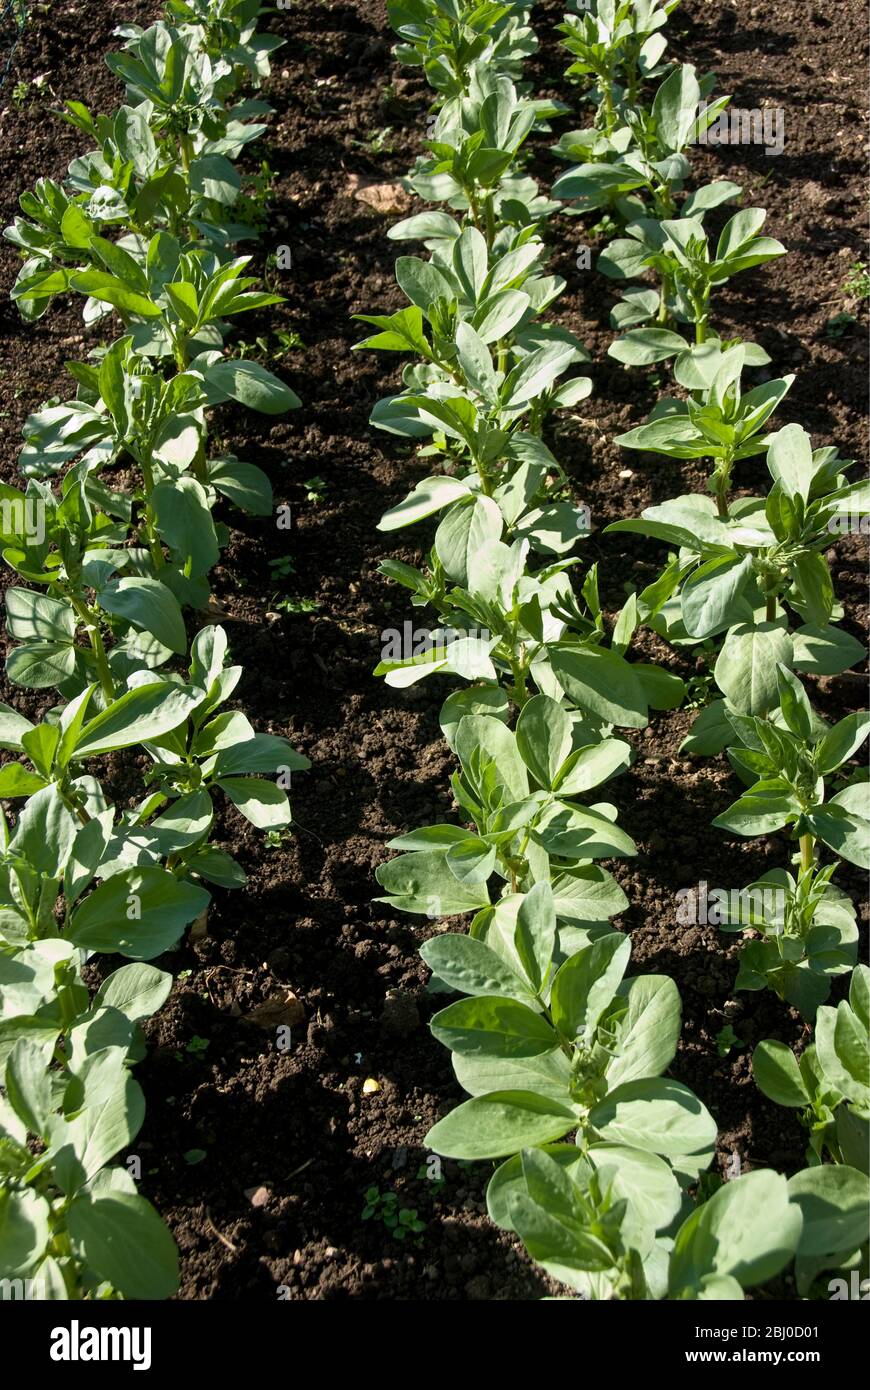 Junge breite Bohnenpflanzen in Reihen in gut gepflegtem Gemüsegrundstück. - Stockfoto